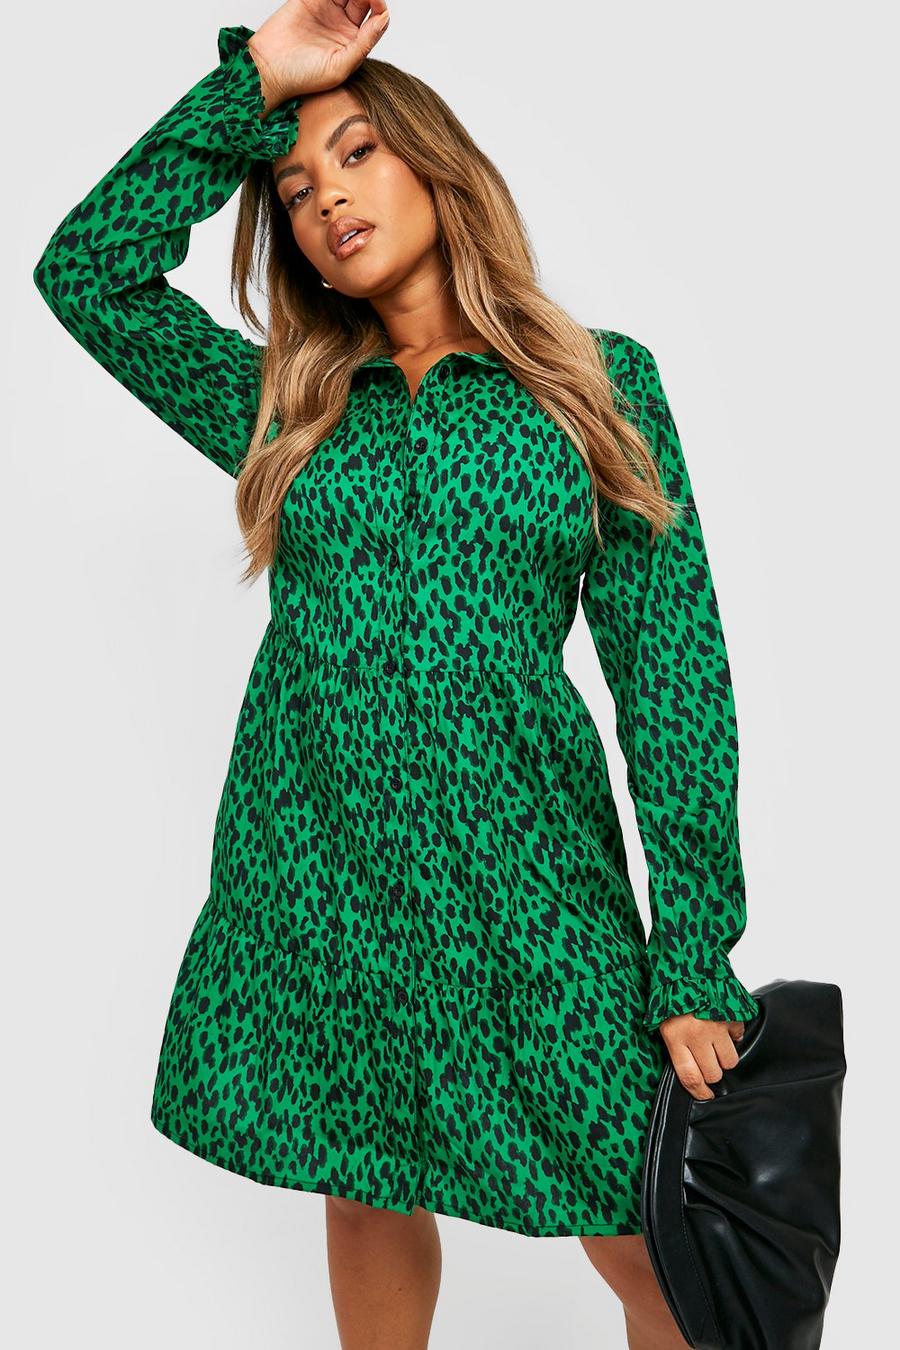 ירוק שמלת חולצה סמוק עם דוגמת חיות, מידות גדולות